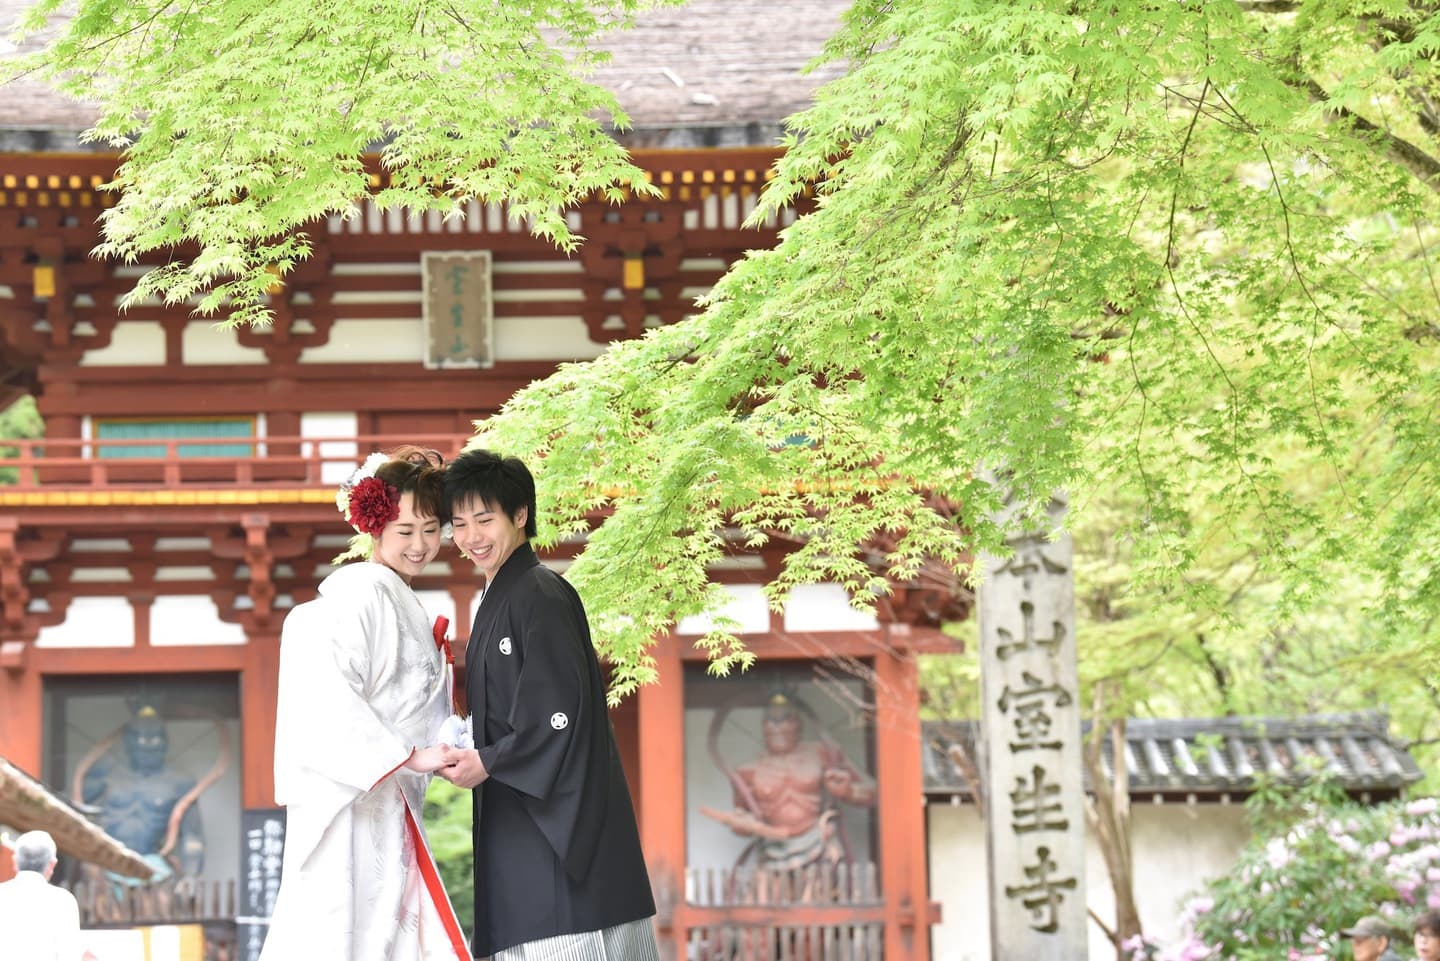 奈良室生寺での和装前撮りフォトウェディングの写真